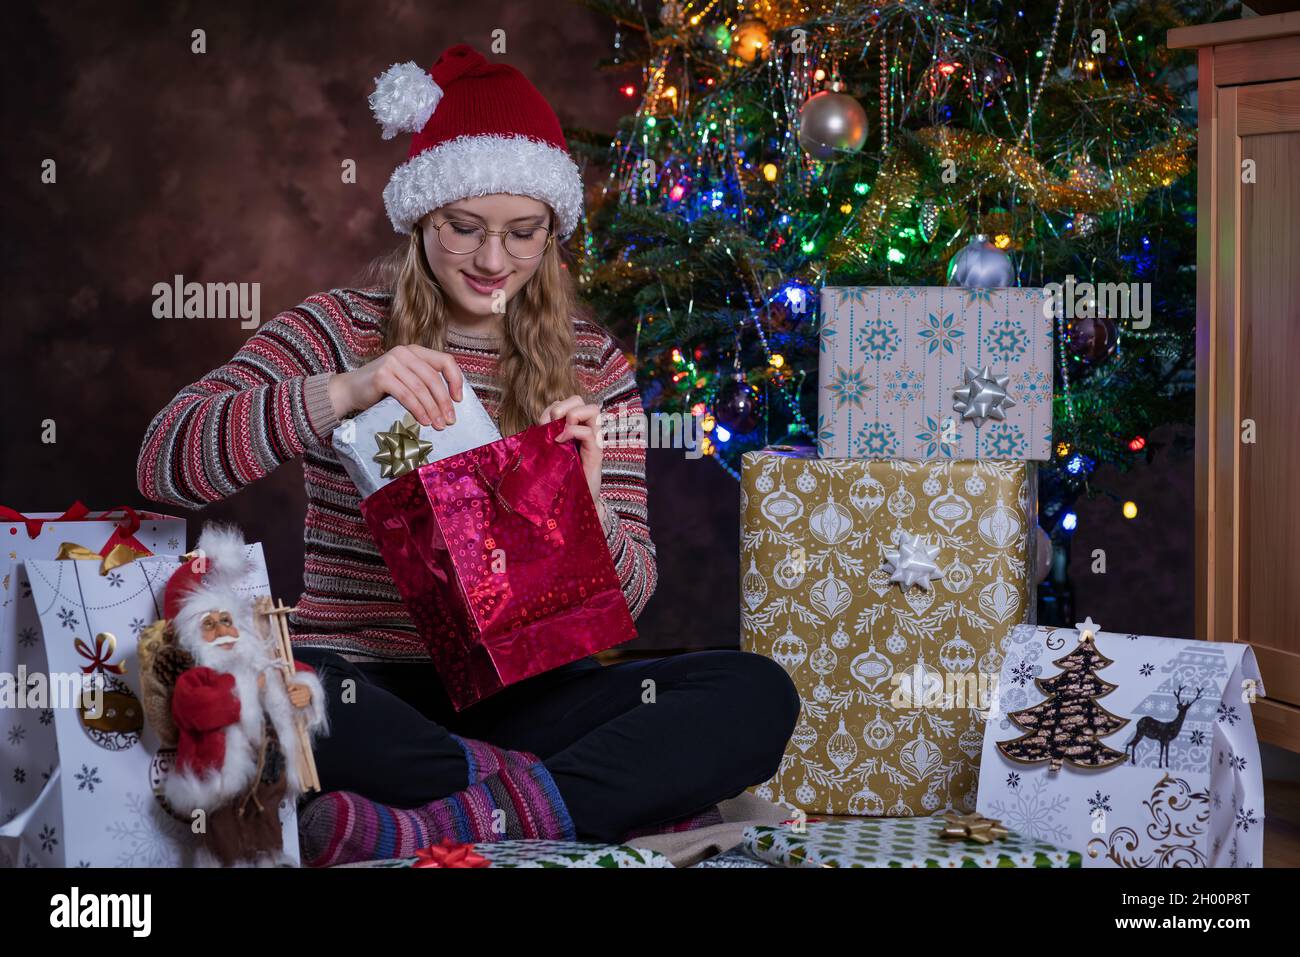 Ein Mädchen, das eine Brille und einen Weihnachtsmann-Hut trägt, lächelt mit einer fröhlichen Stimmung, sitzt neben einem Weihnachtsbaum und öffnet Geschenke. Weihnachtsgeschenke. Überraschung. Stockfoto